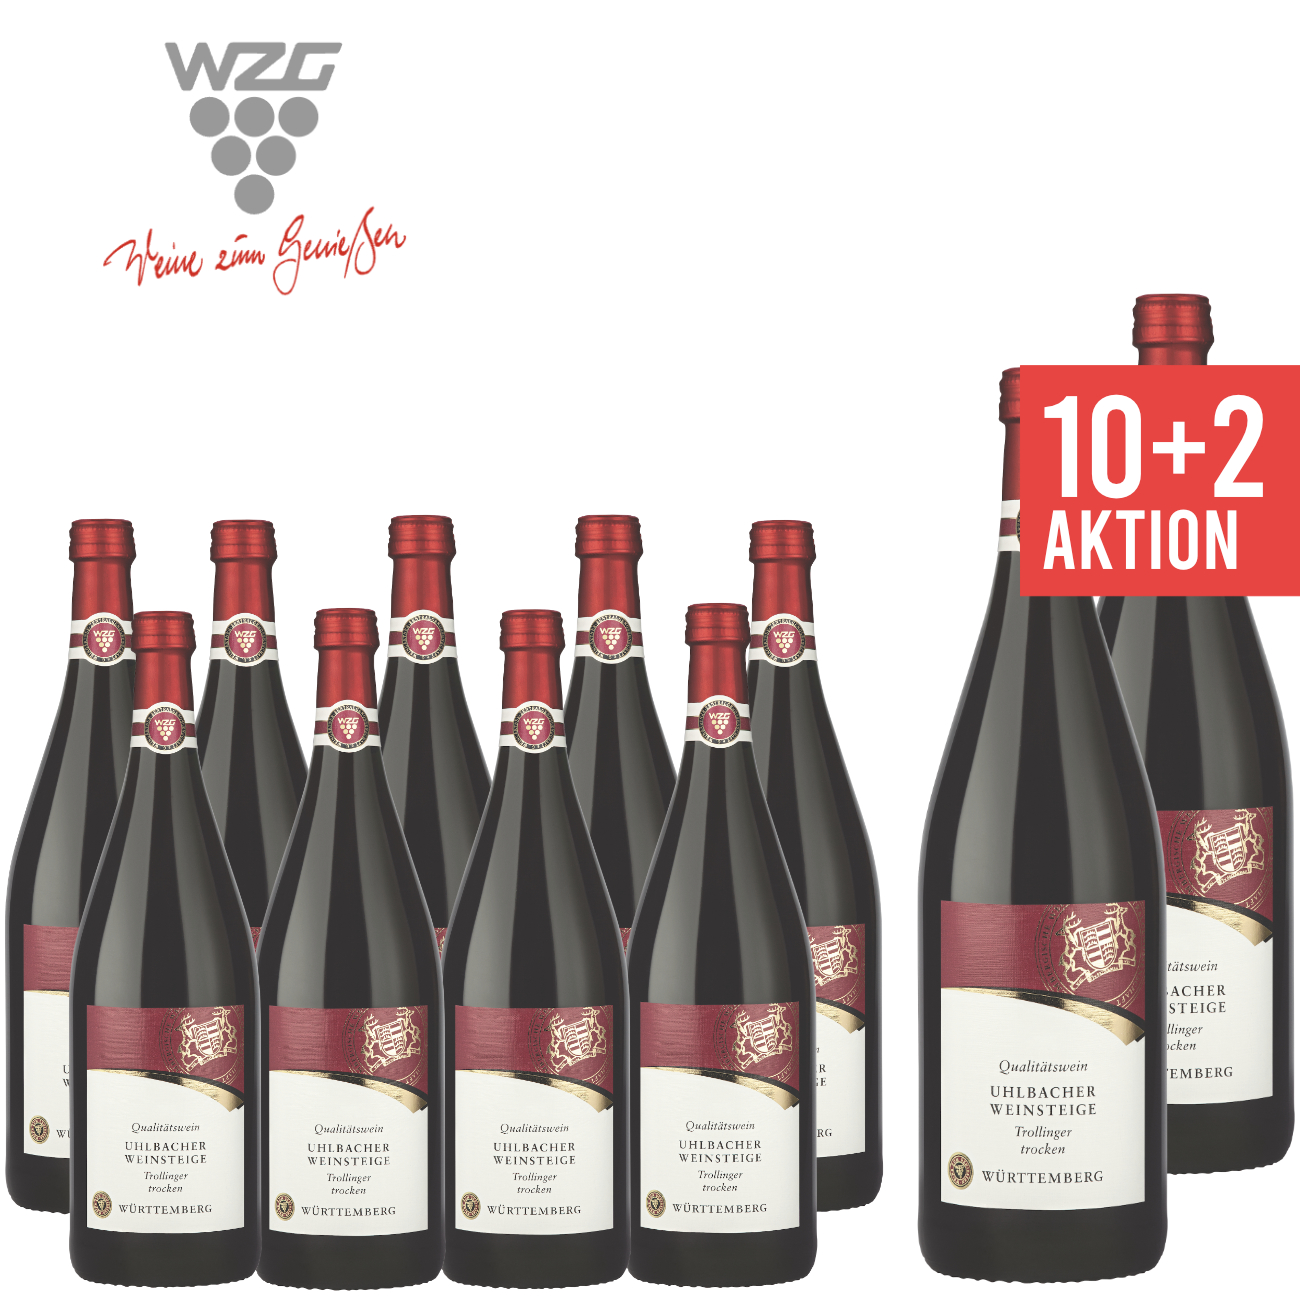 WZG Möglingen 10+2 Uhlbacher Weinsteige Trollinger trocken 1,0 L - Angebot, Qualitätswein, Rotwein, Württemberg, günstige Literflasche, 1-Liter